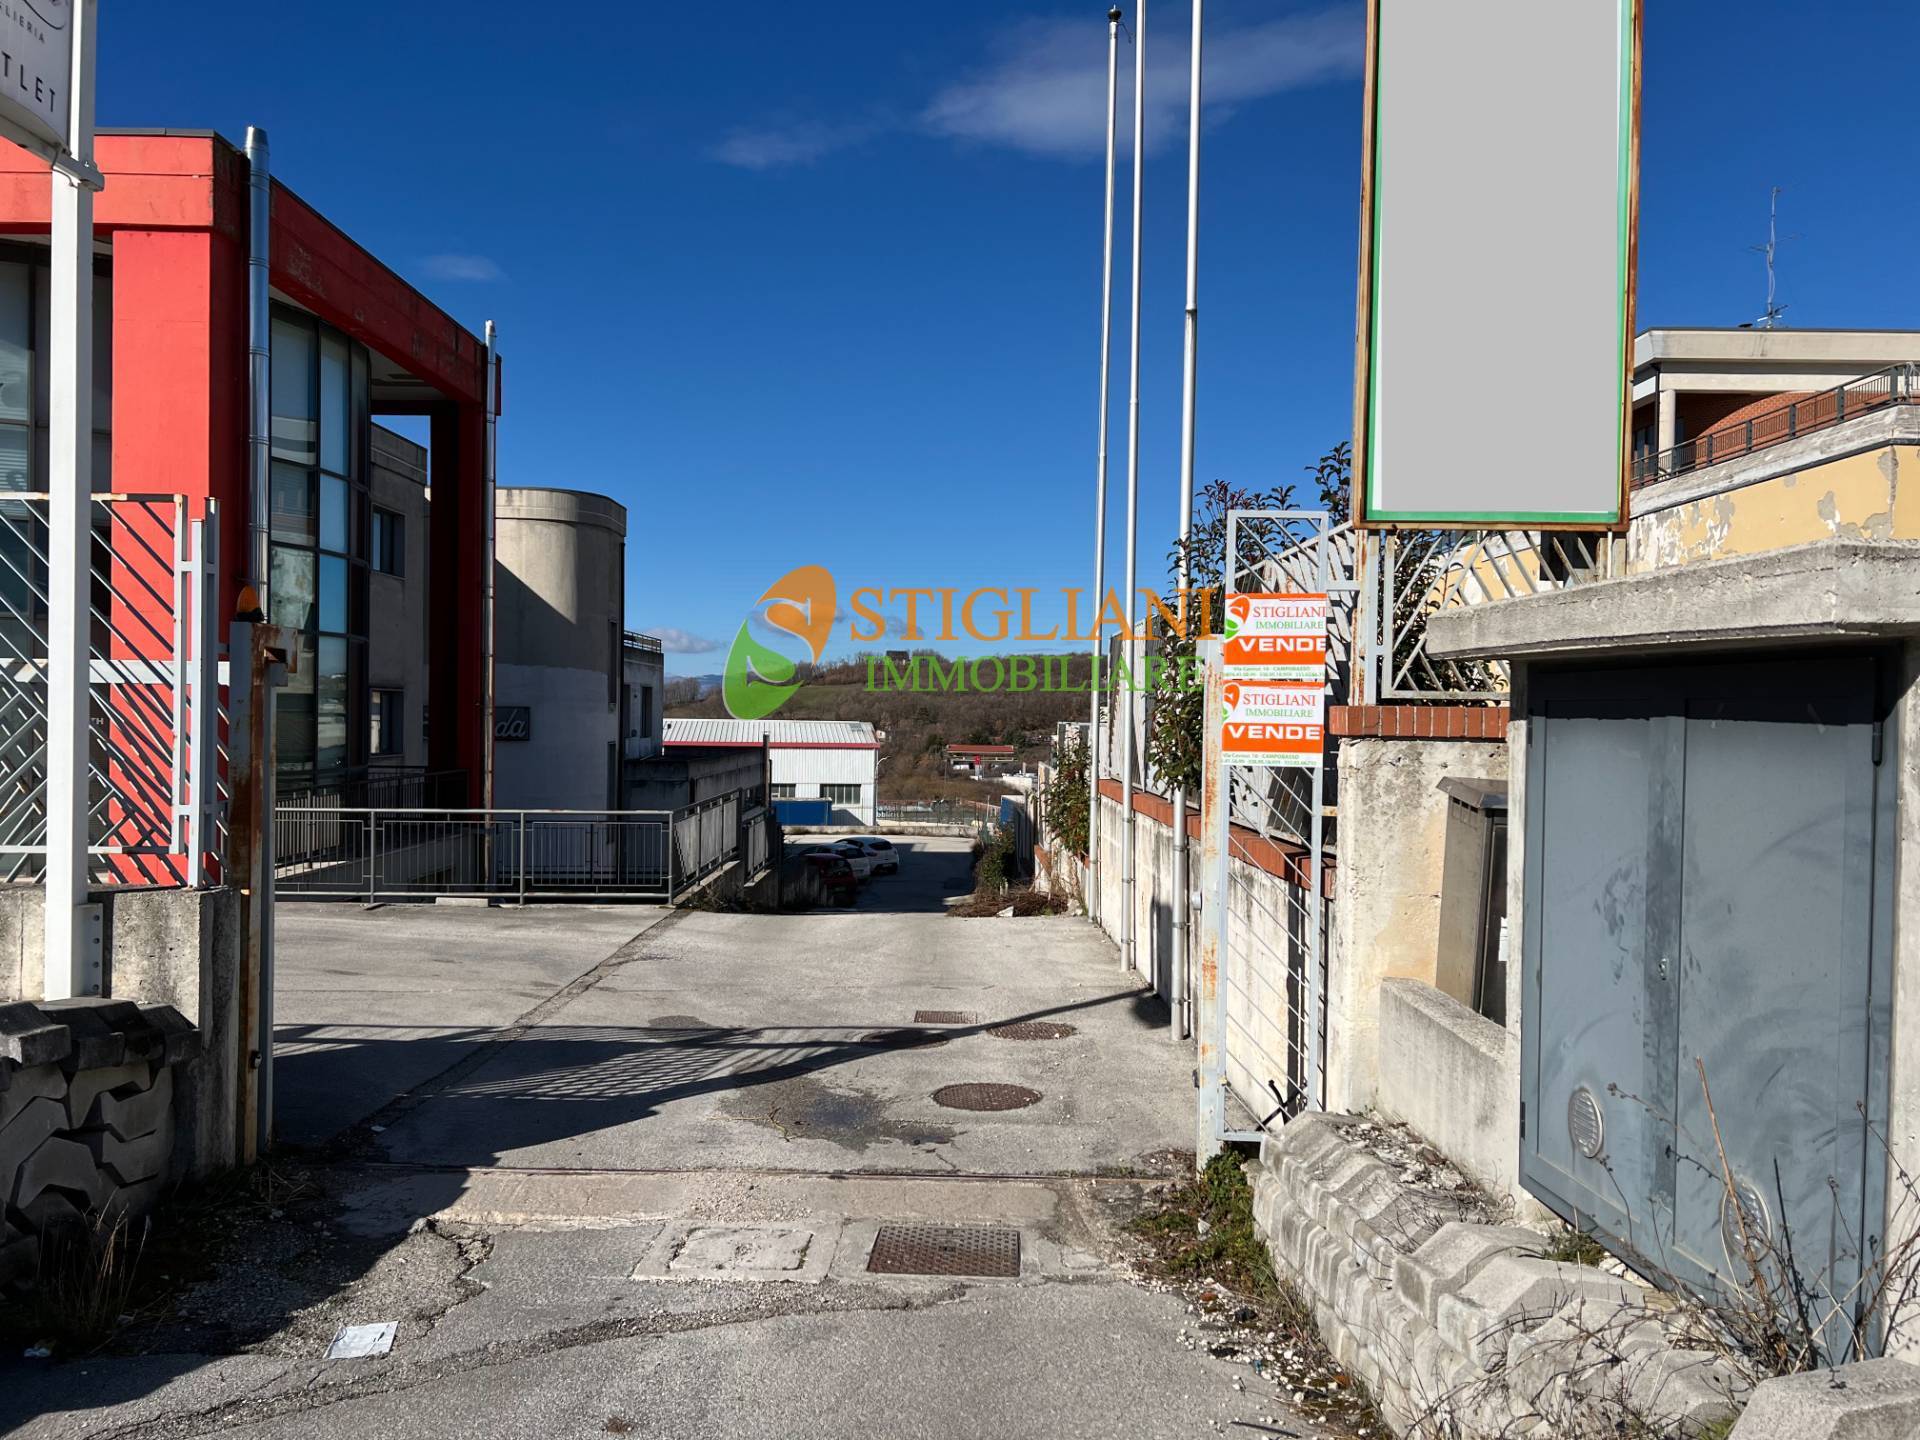 Locale commerciale in vendita, Campobasso viale unit d'italia